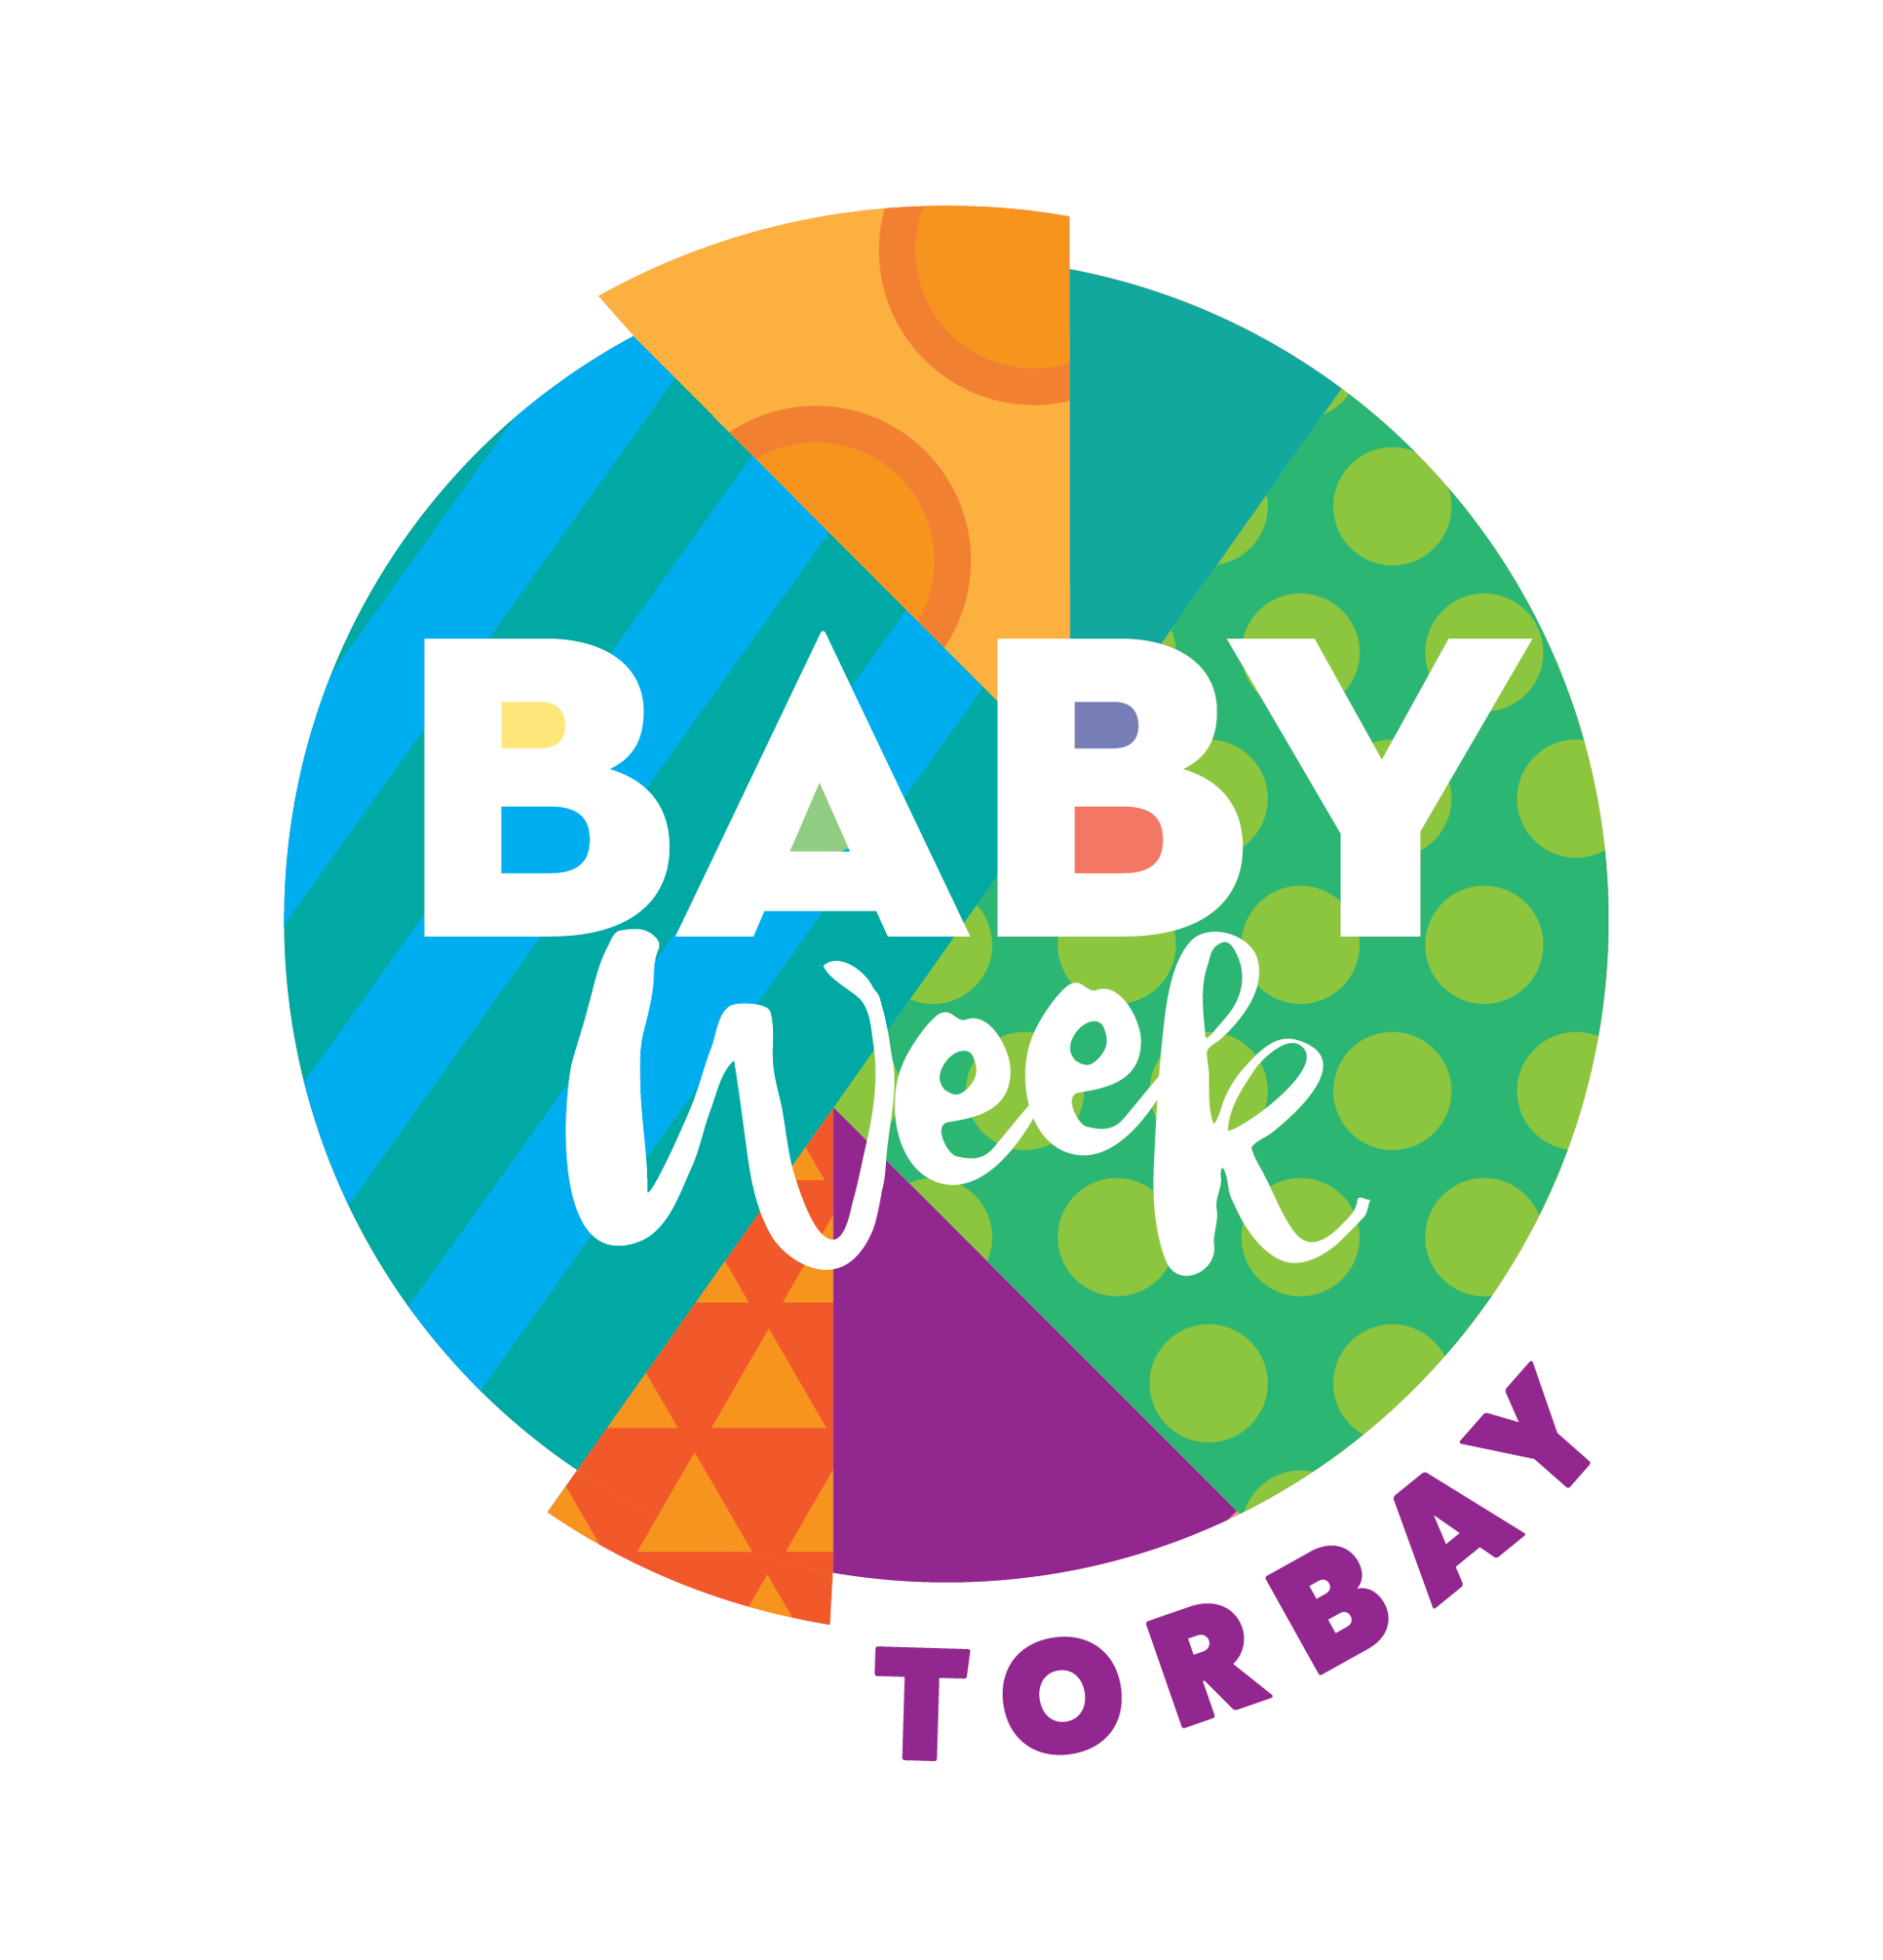 torbay baby week